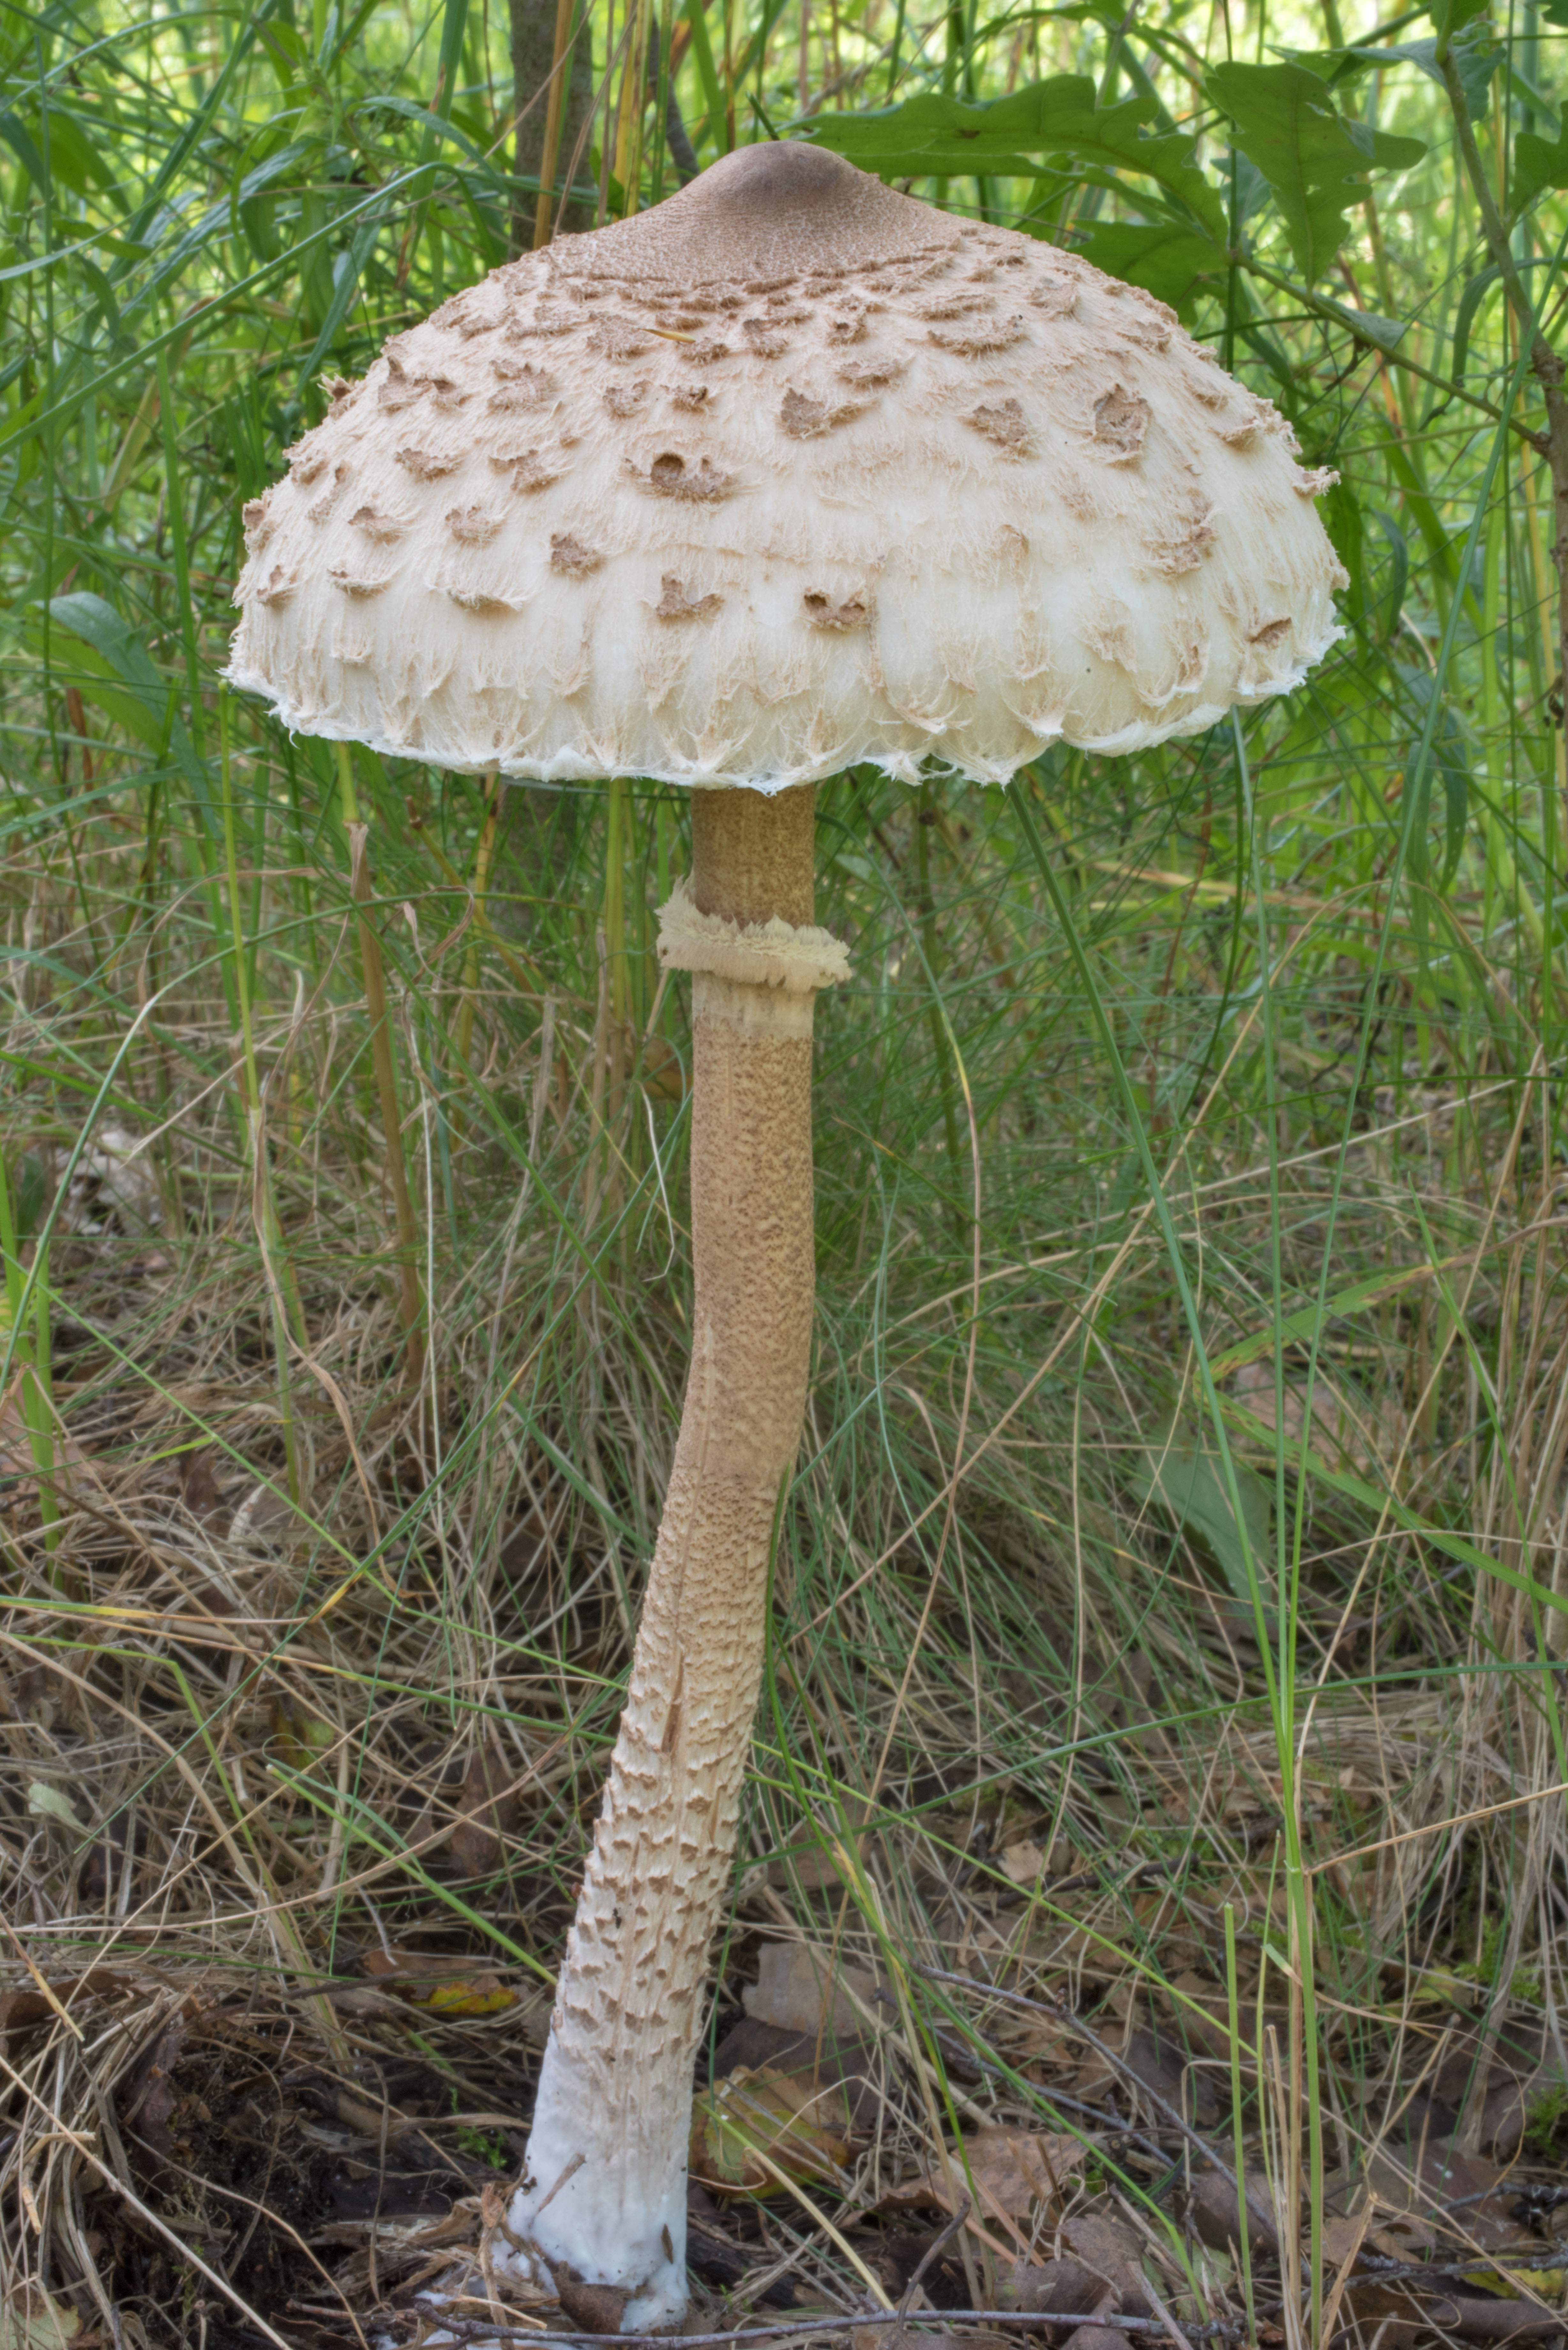 гриб зонтик пестрый съедобный или нет фото